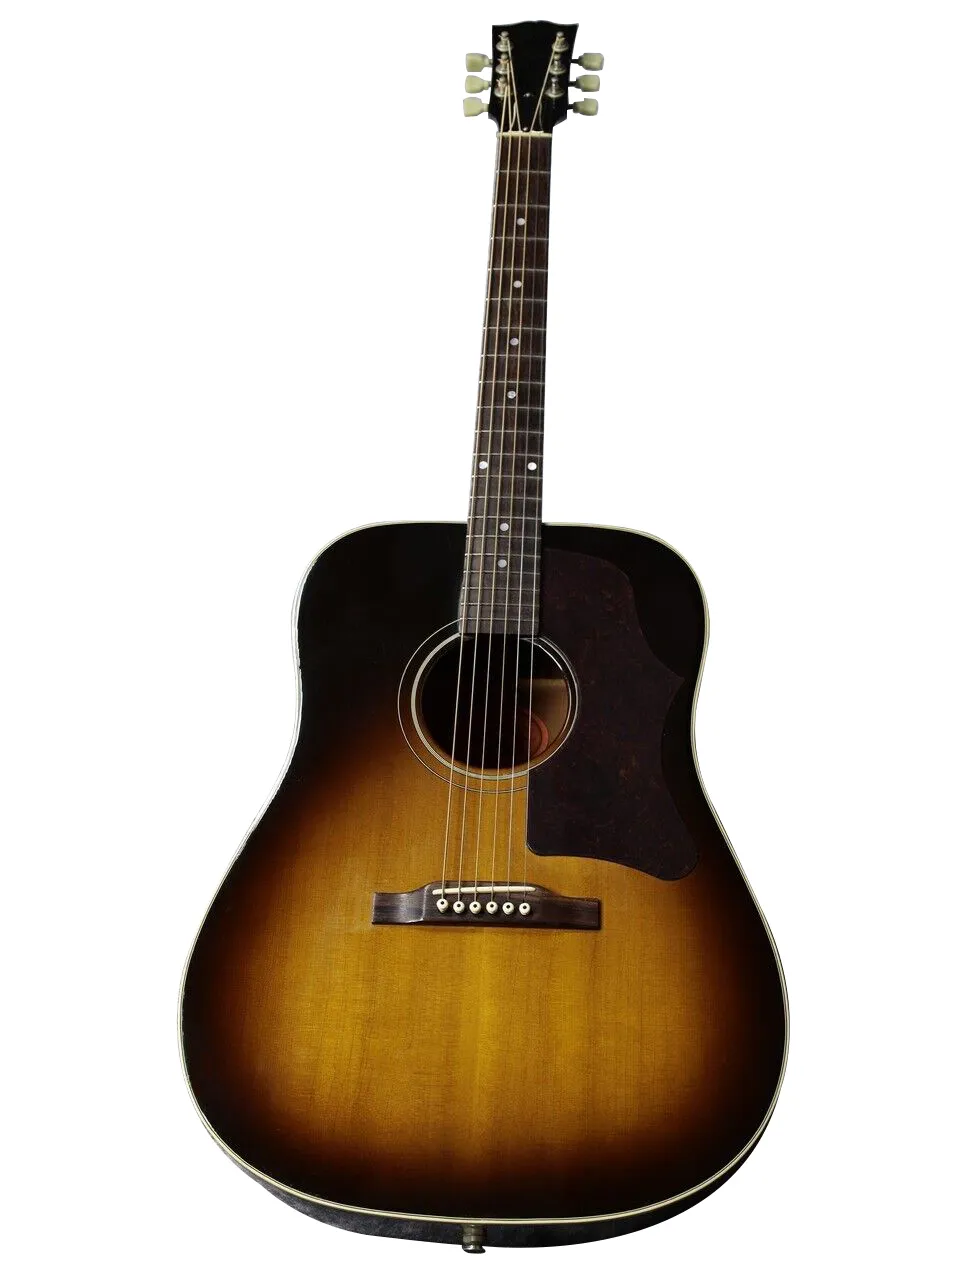 J-30 1995 Guitar akustyczny jako sama z Pictures Electric Acoustic Guitar